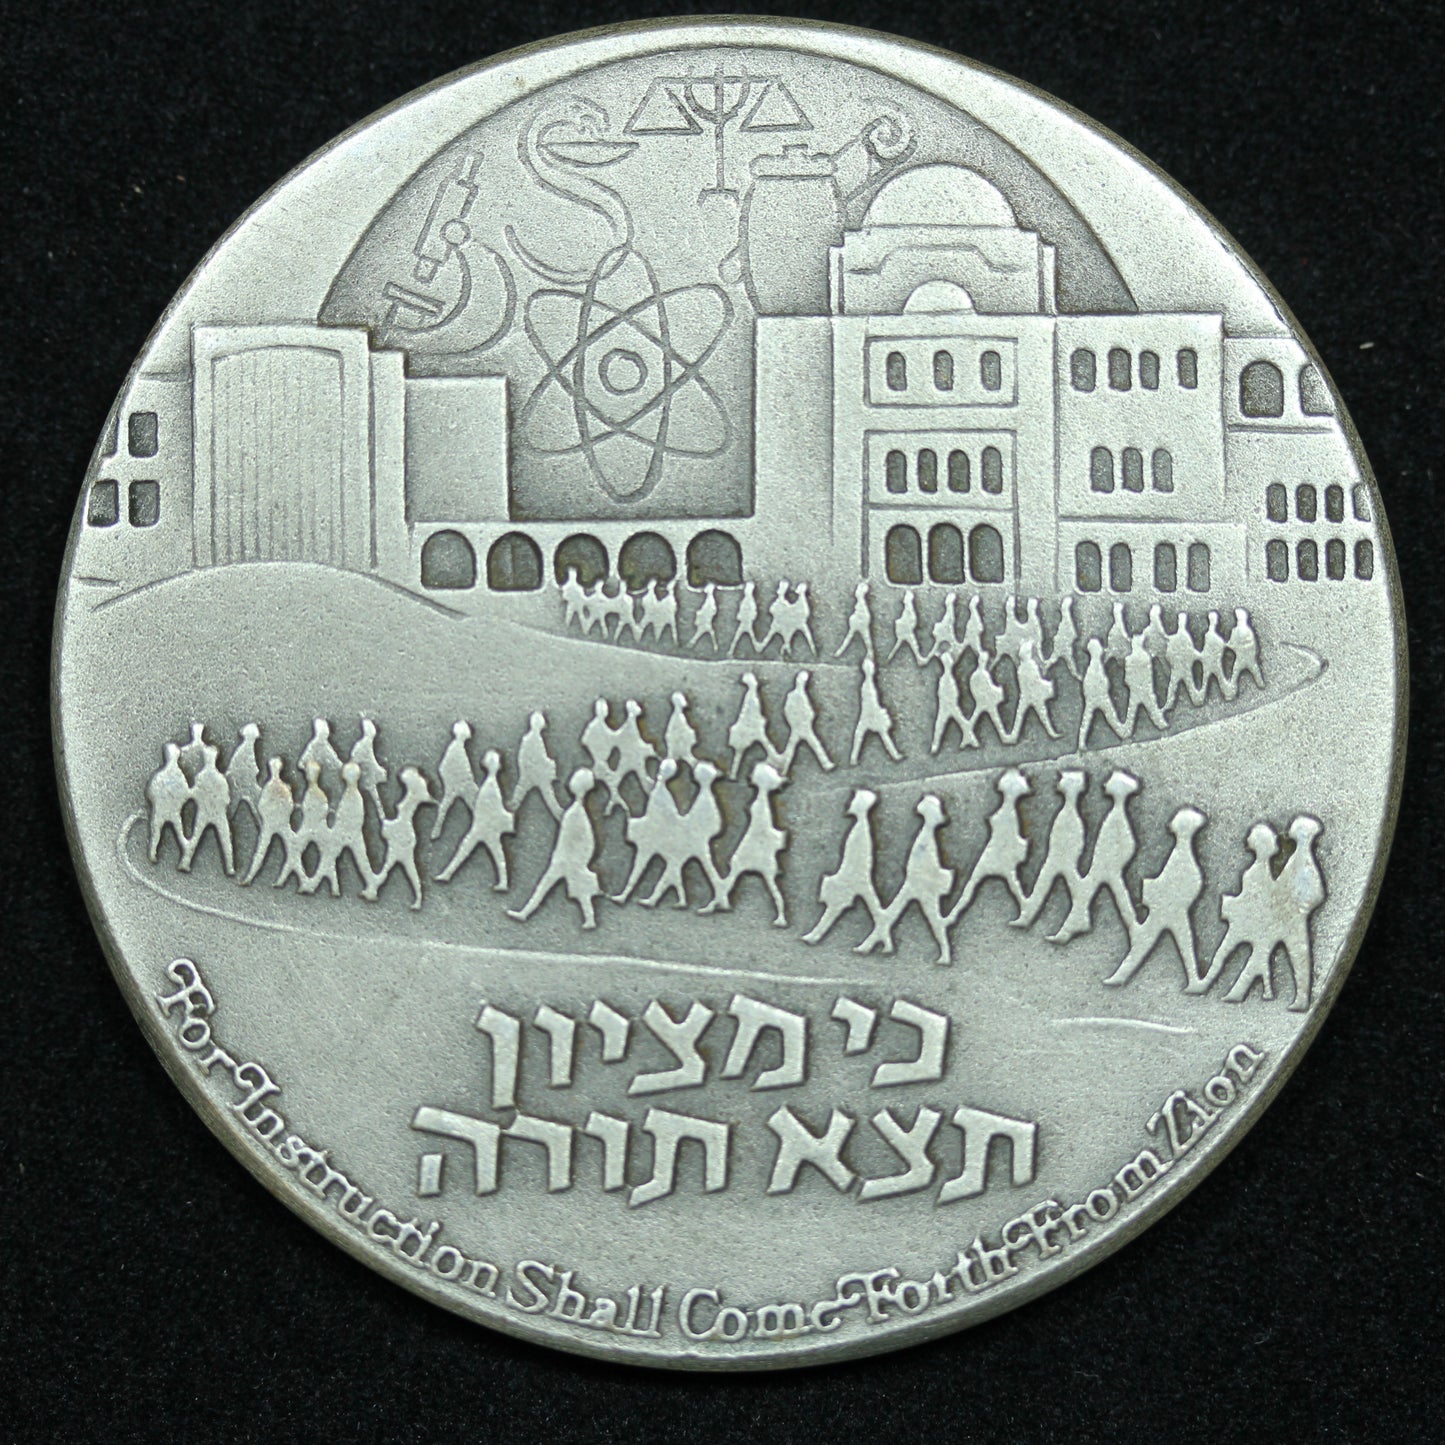 1975 Hebrew University of Jerusalem Jubilee Sterling .935 Medal 45mm 47g